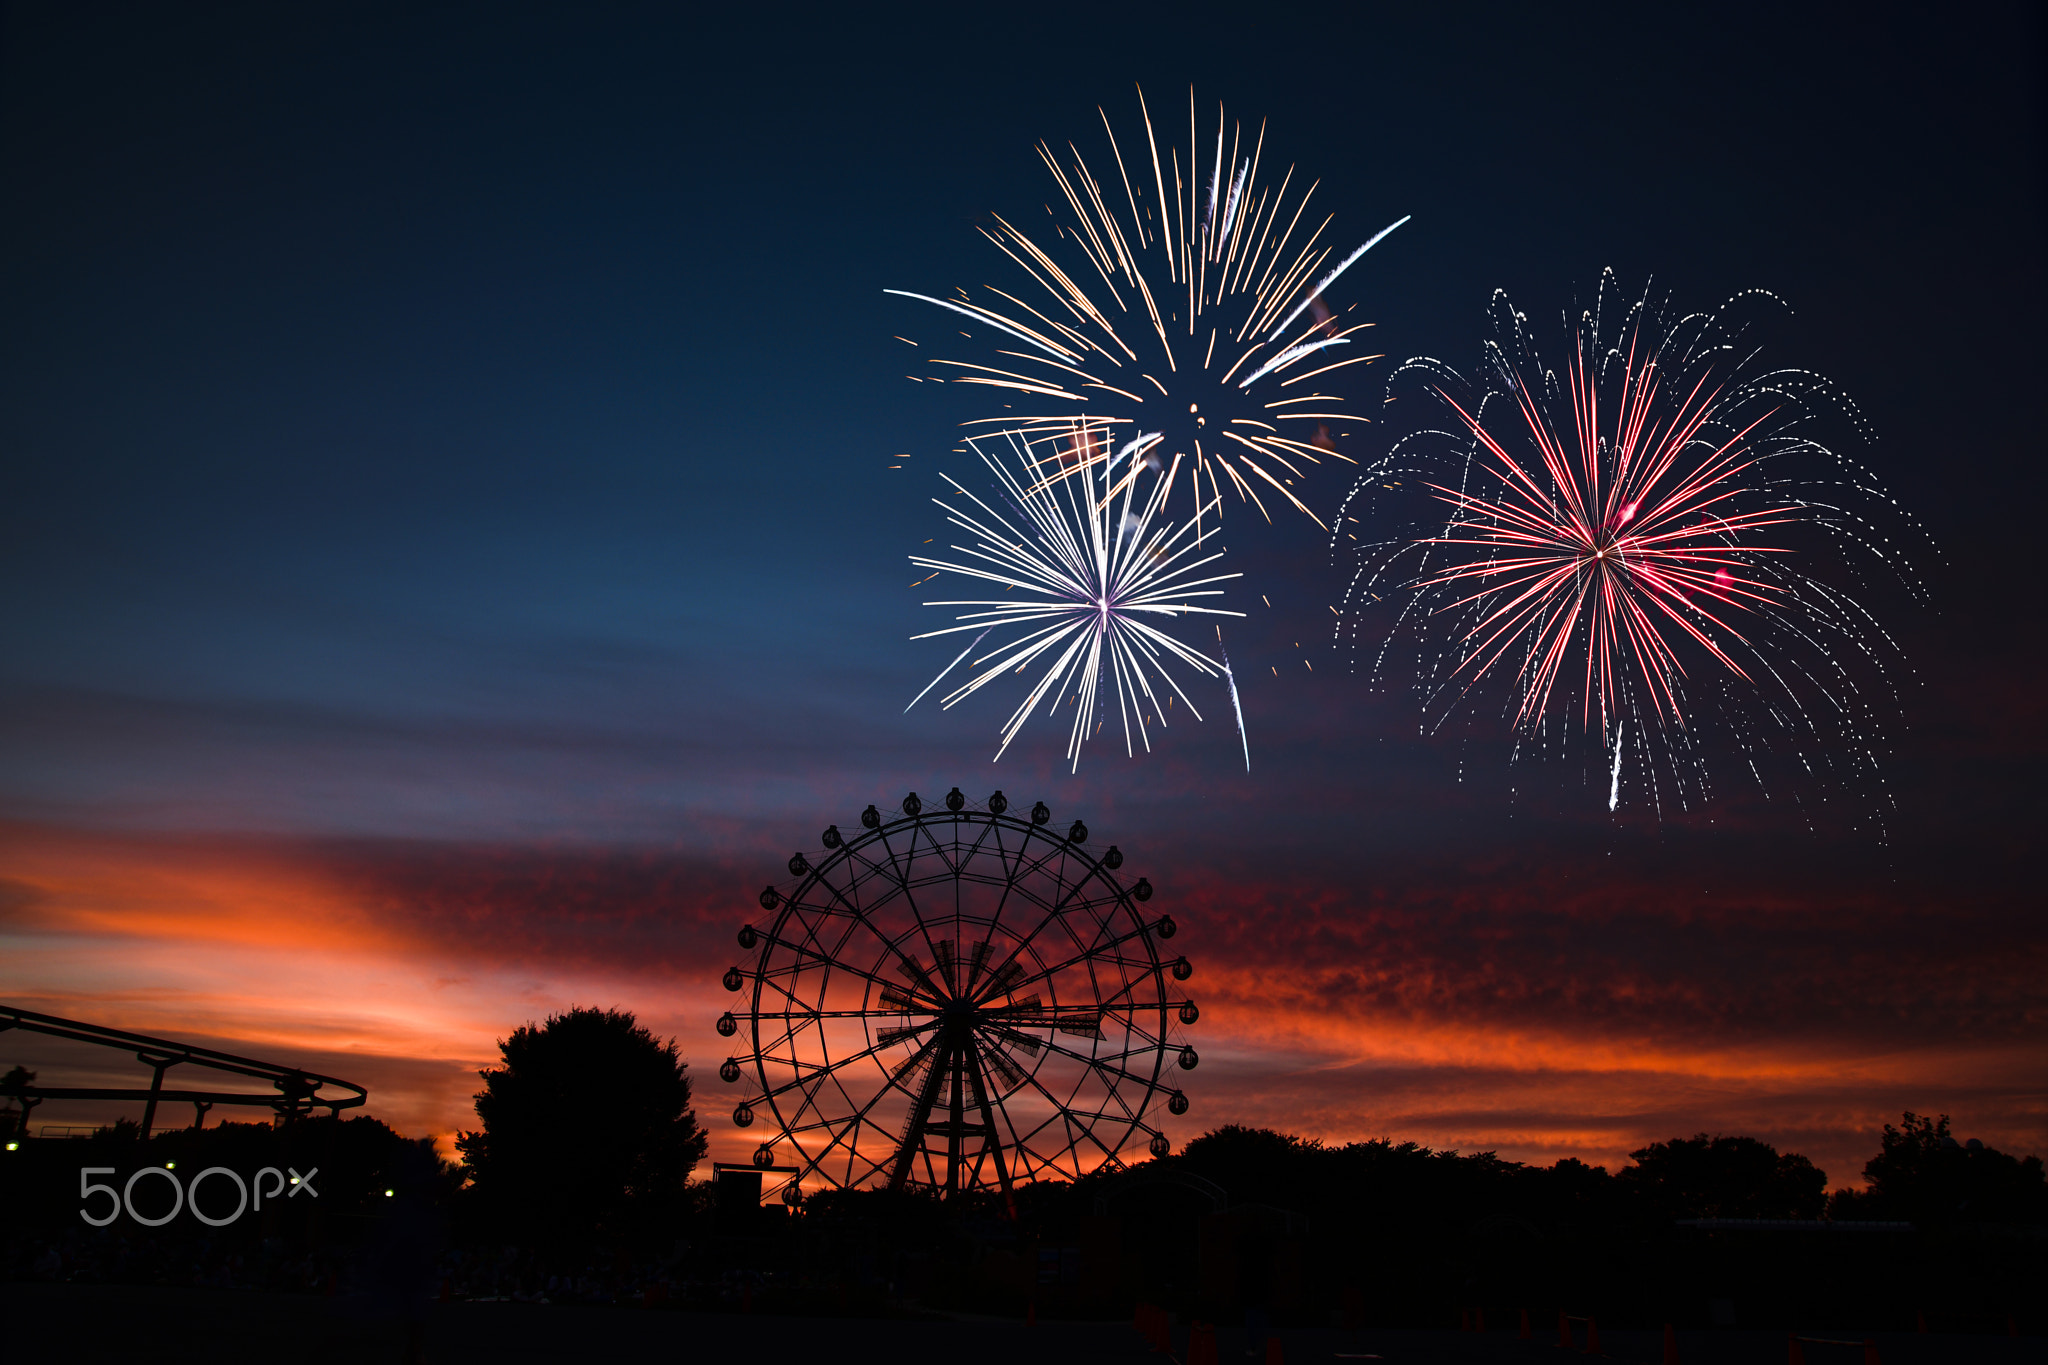 Fireworks over Ferris Wheel